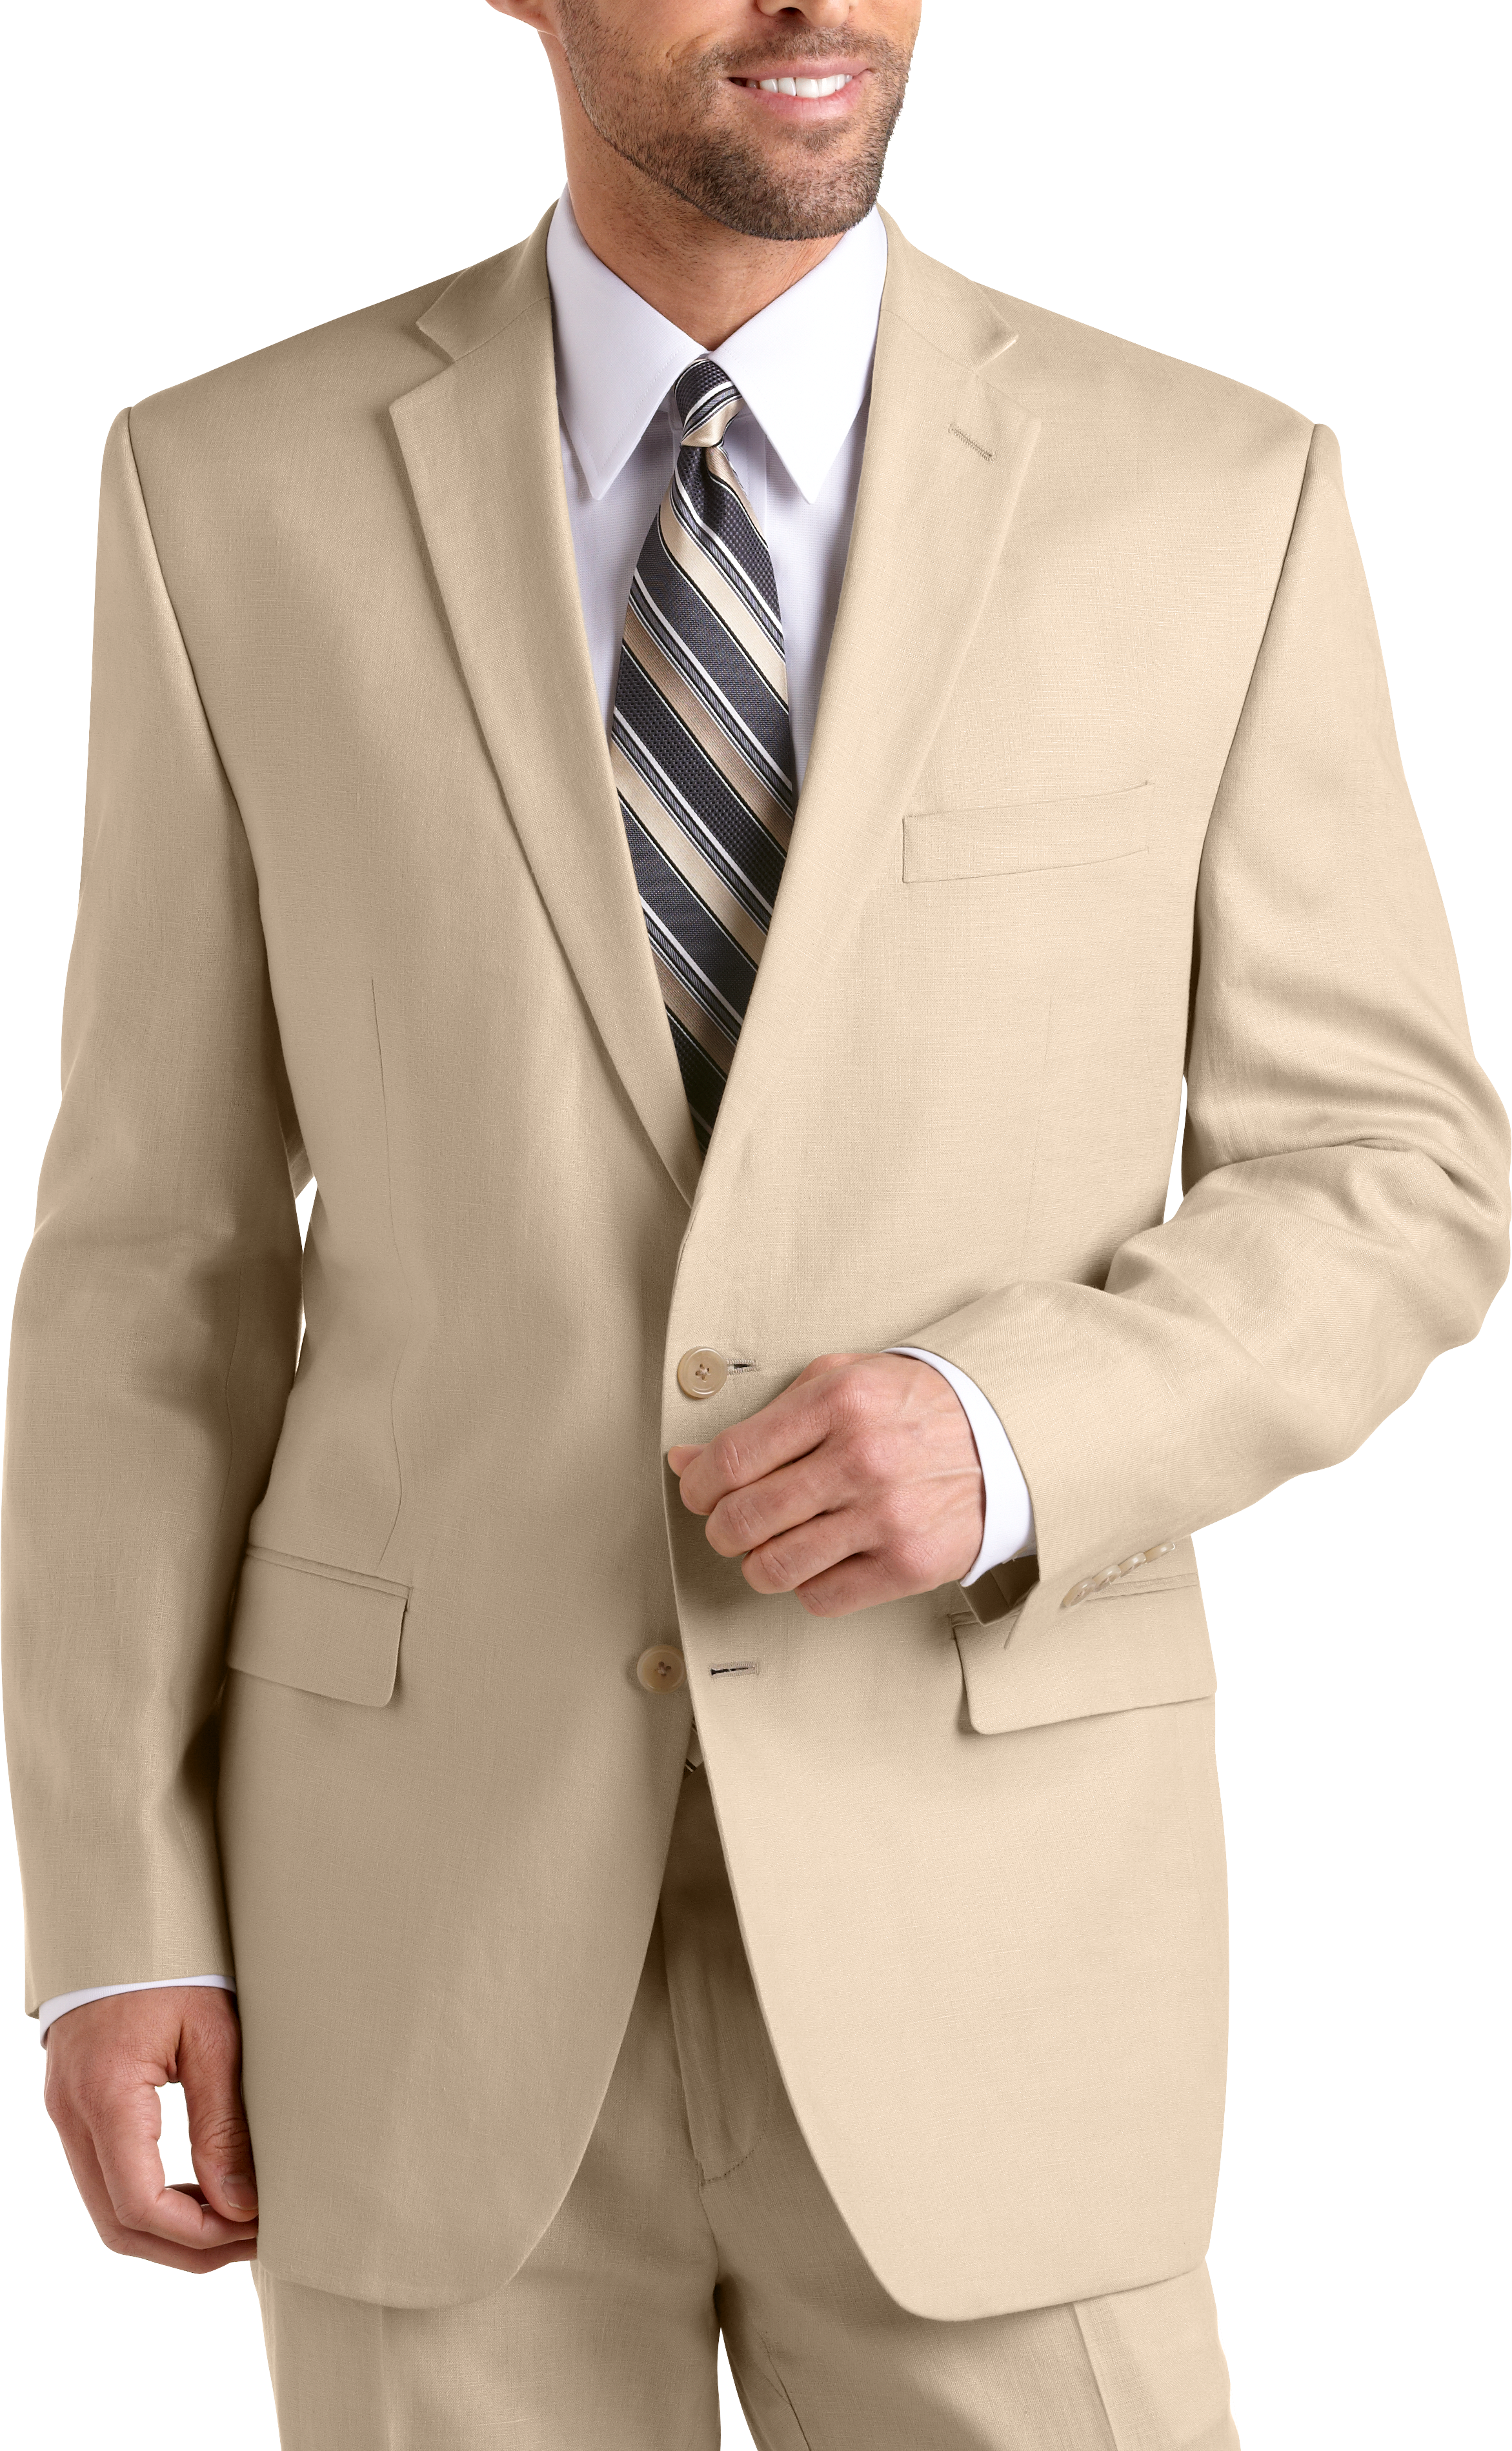 calvin klein suit separates pants